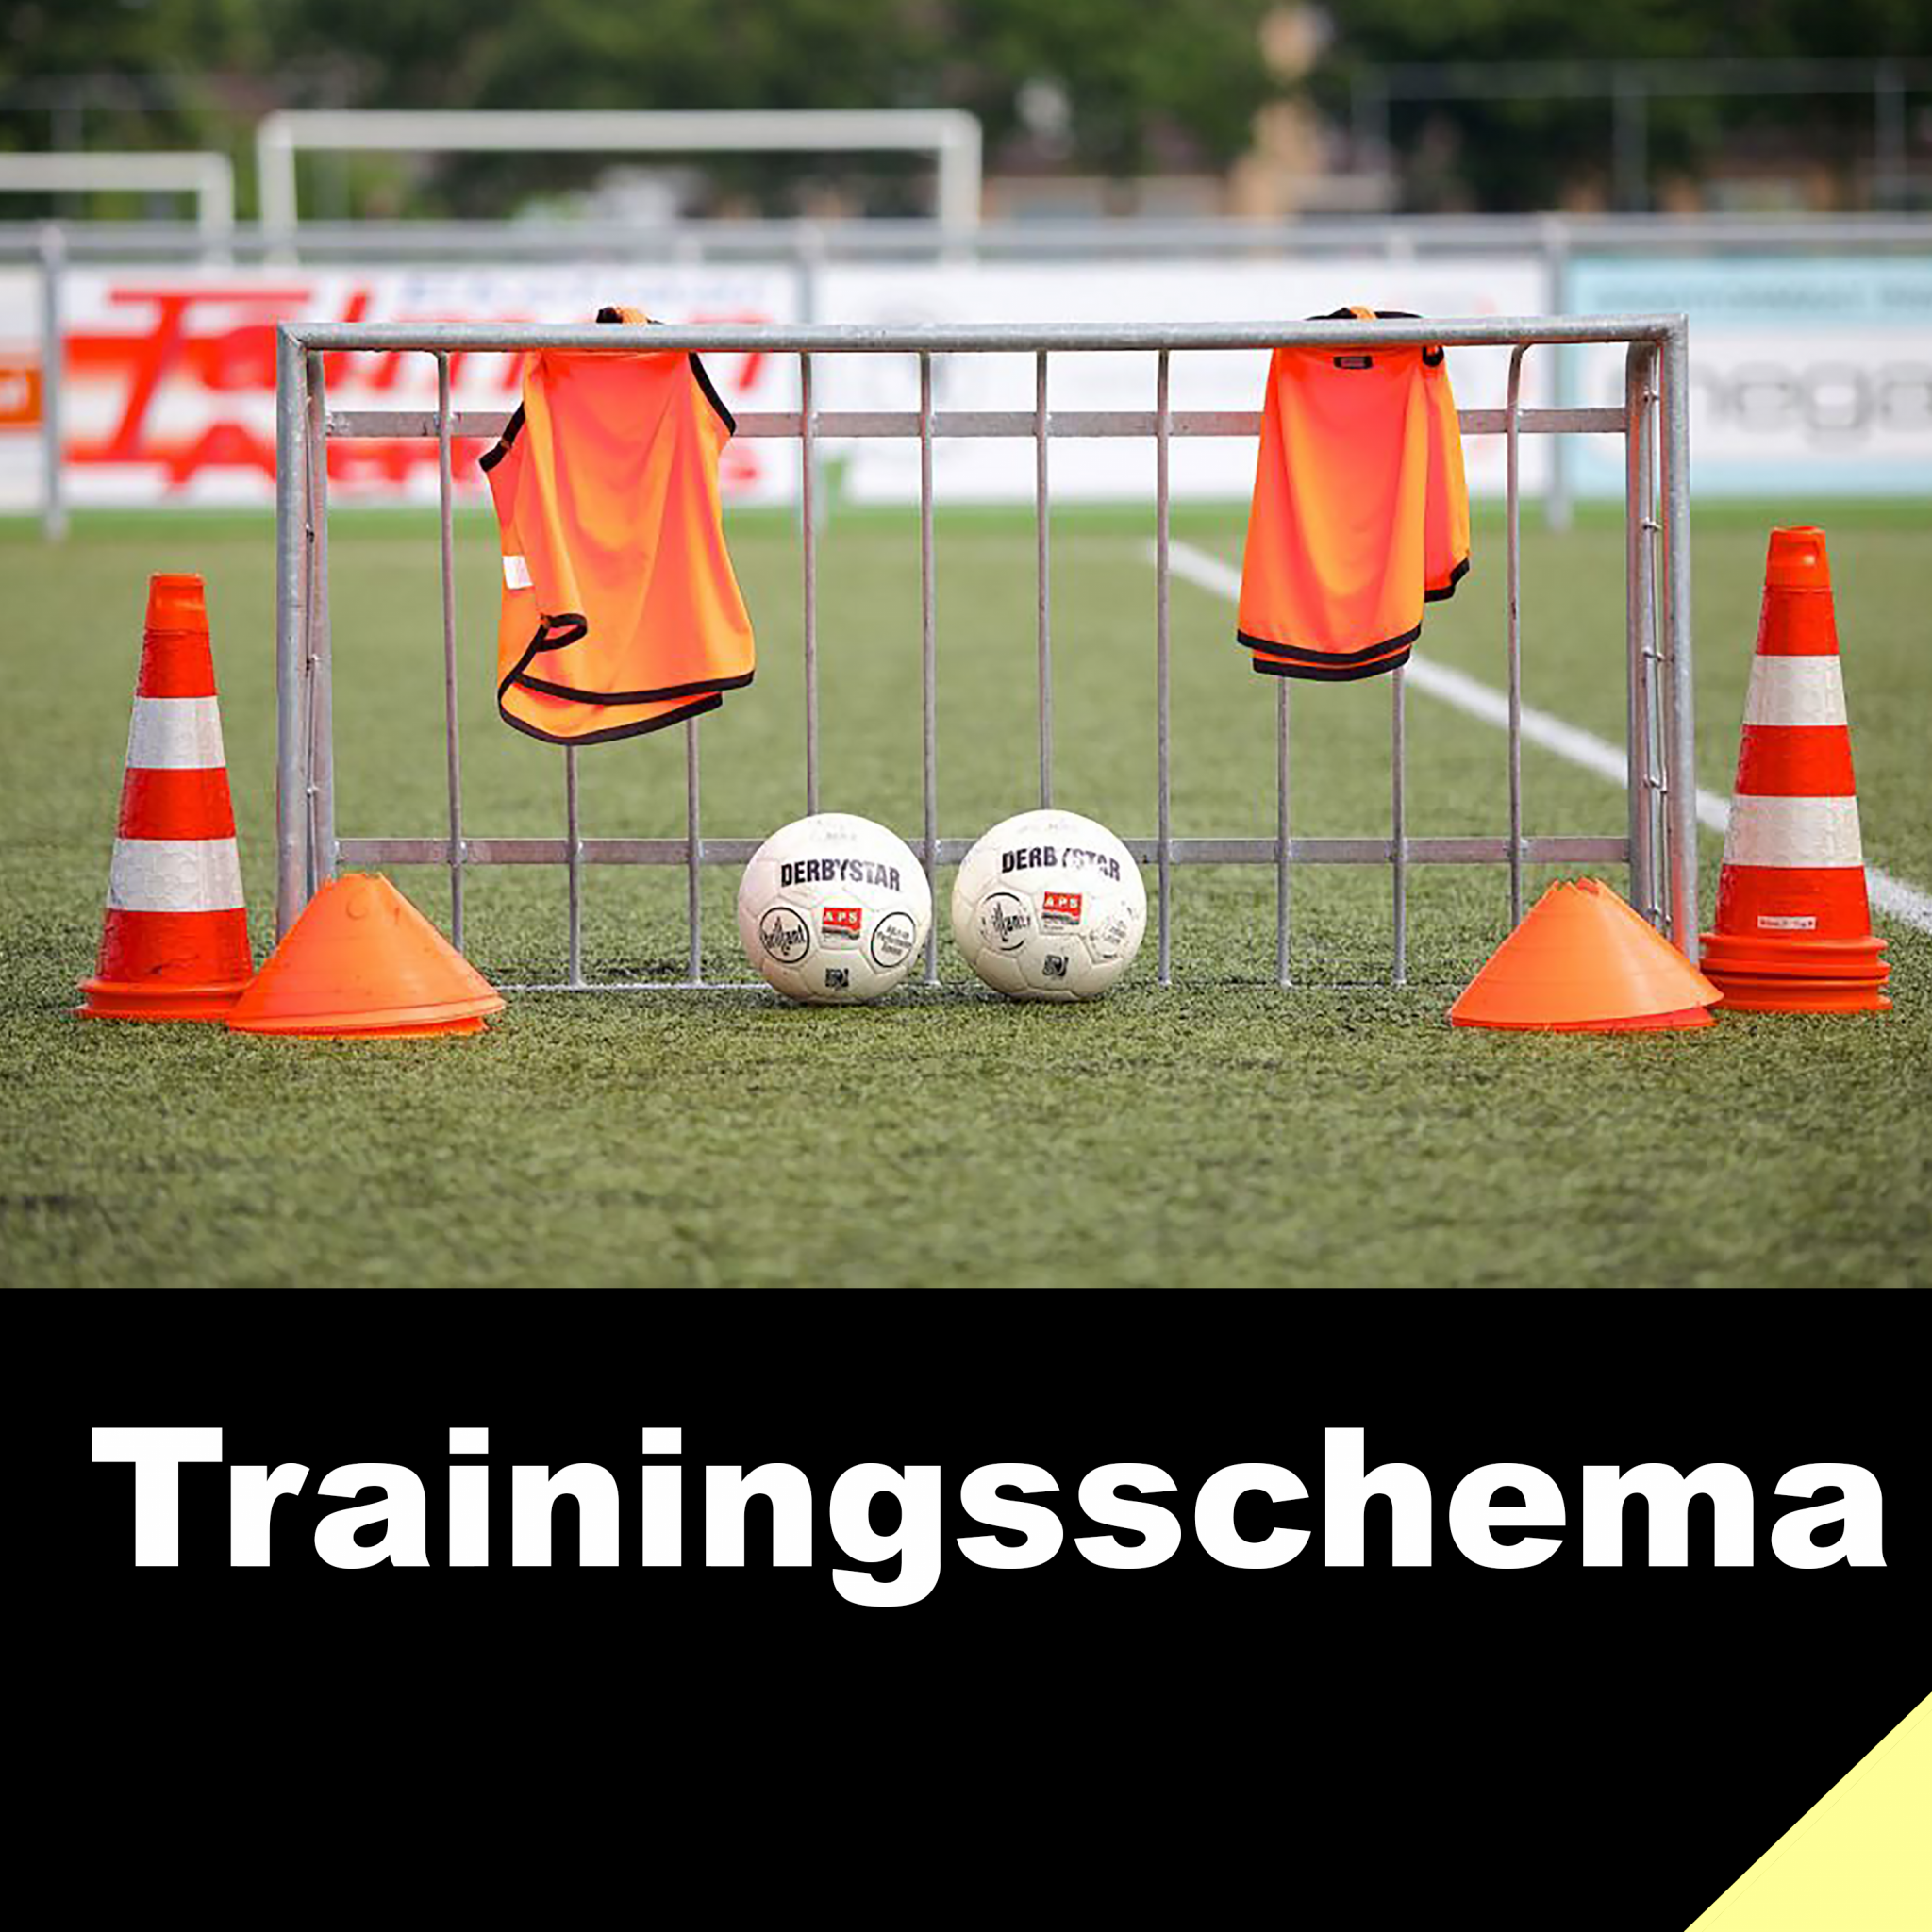 Trainingsschema seizoen 2022 - 2023 bekend (aangepast op 9 augustus 2022)